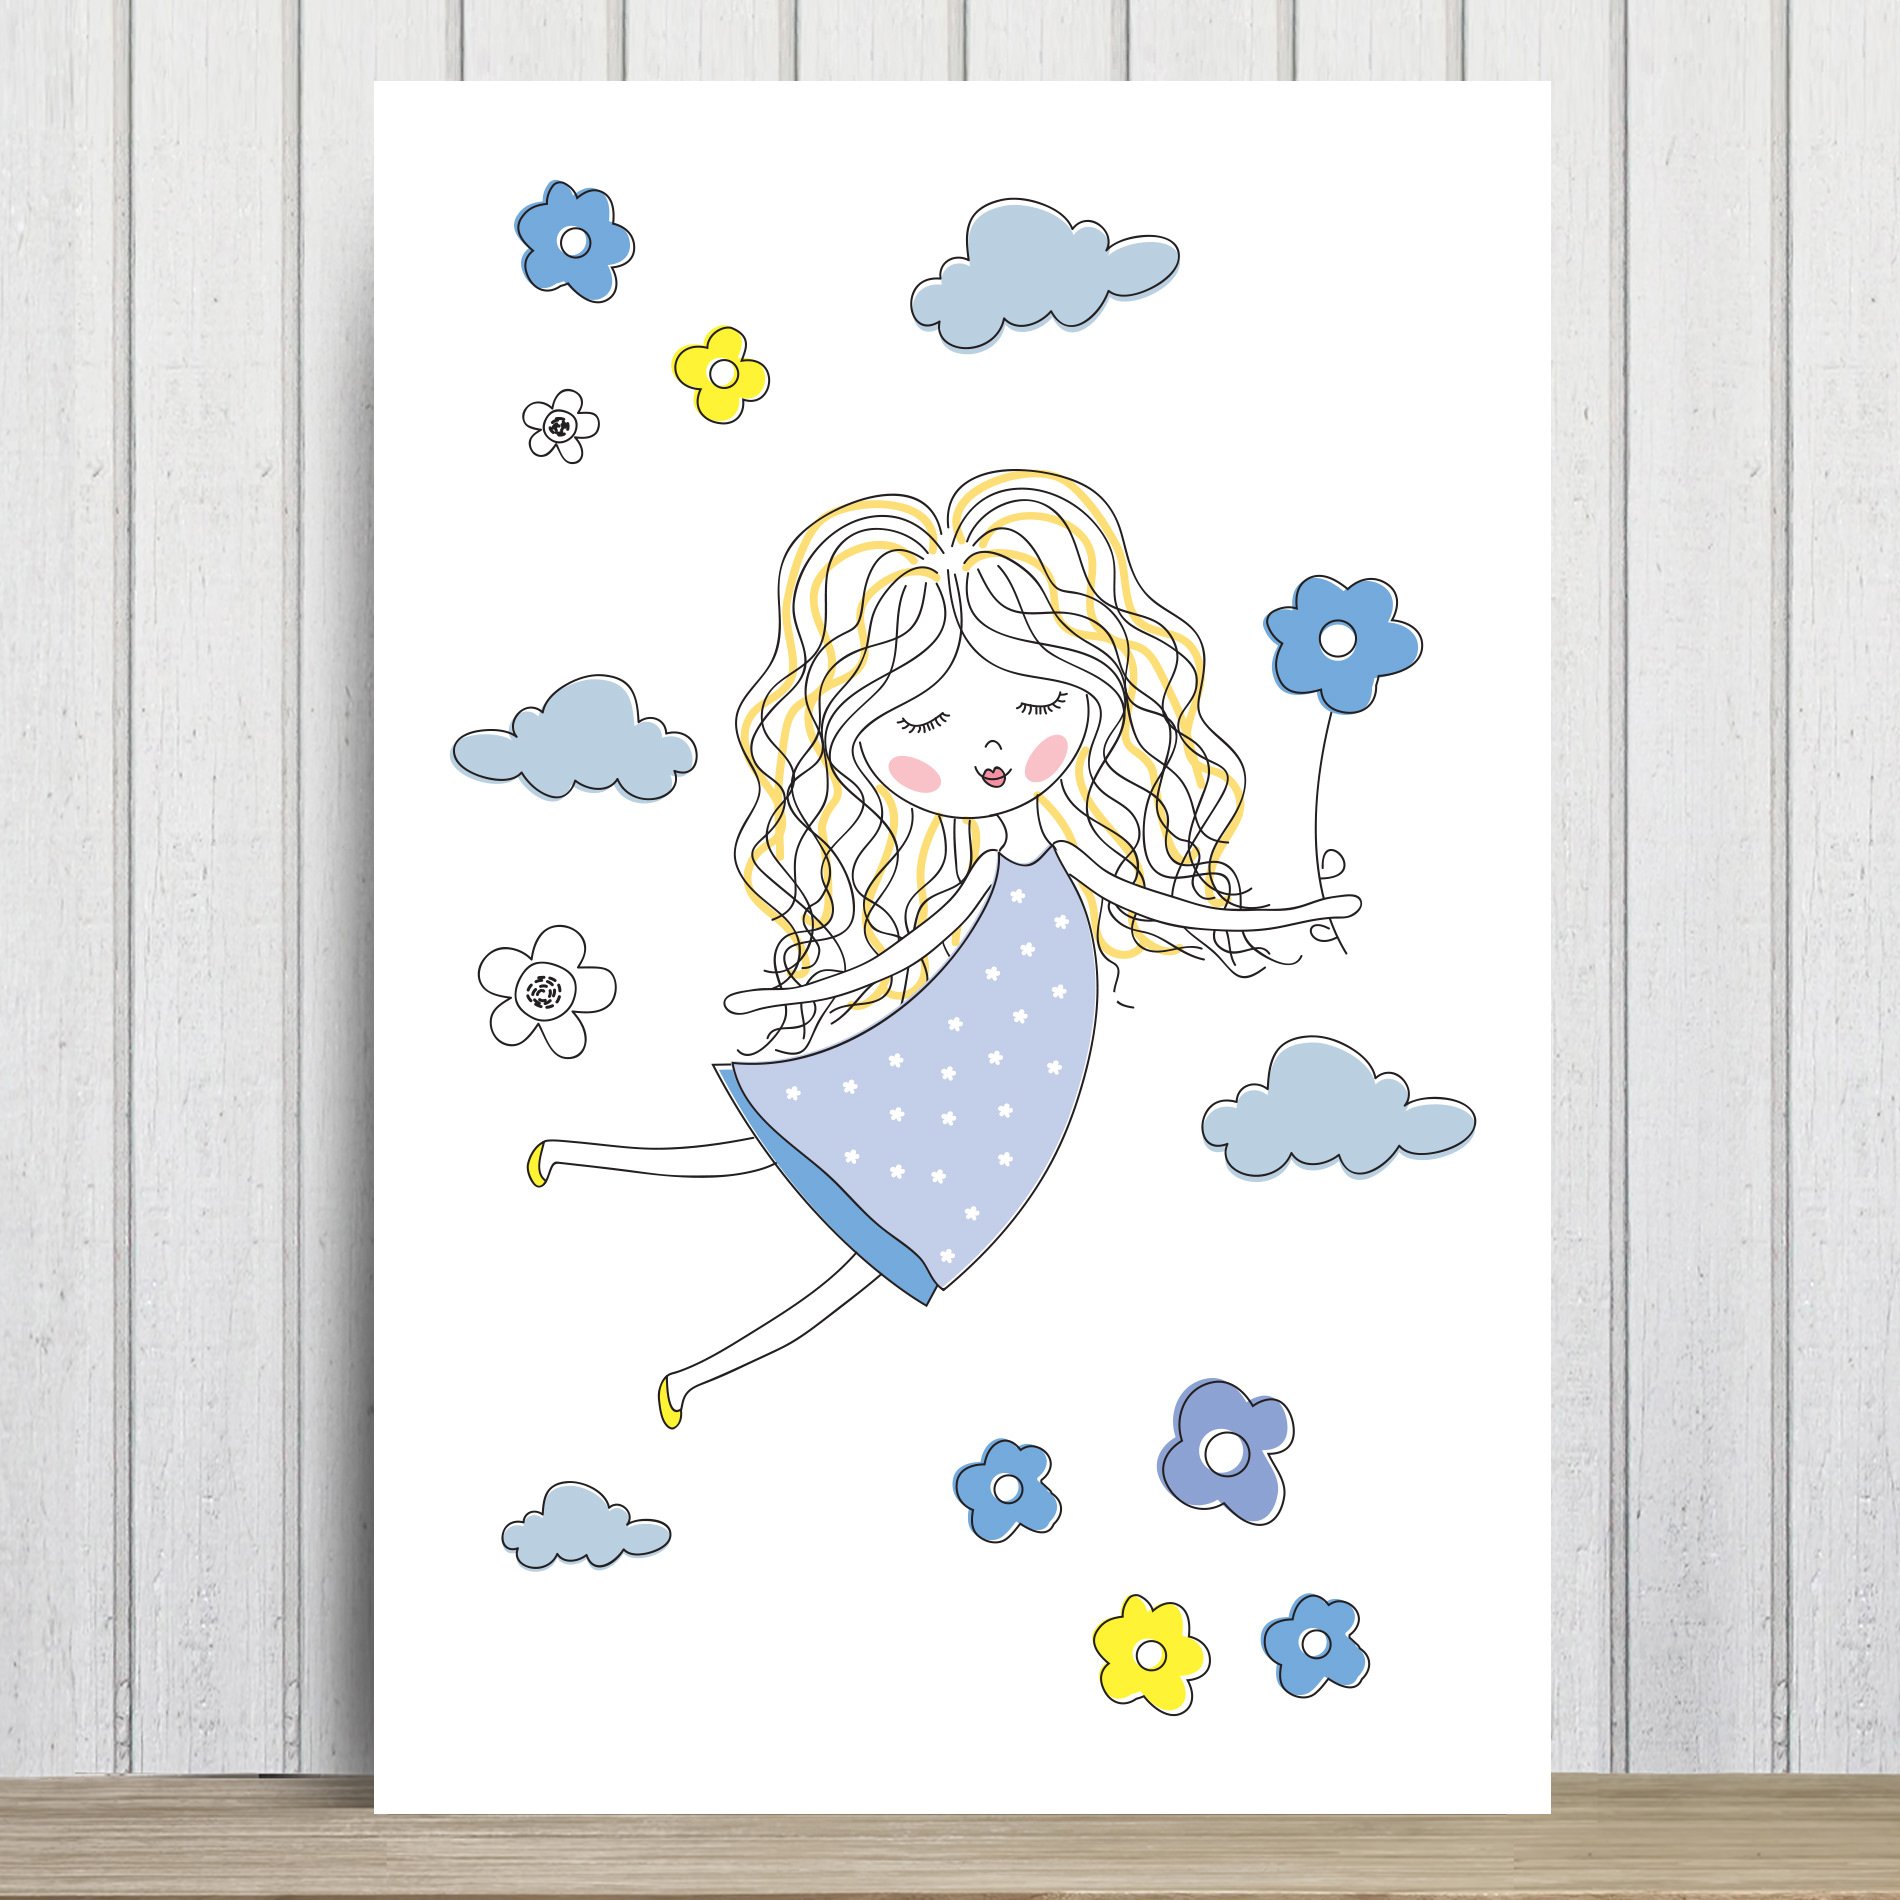 Placa Decorativa MDF Infantil Menina e Flores Azuis